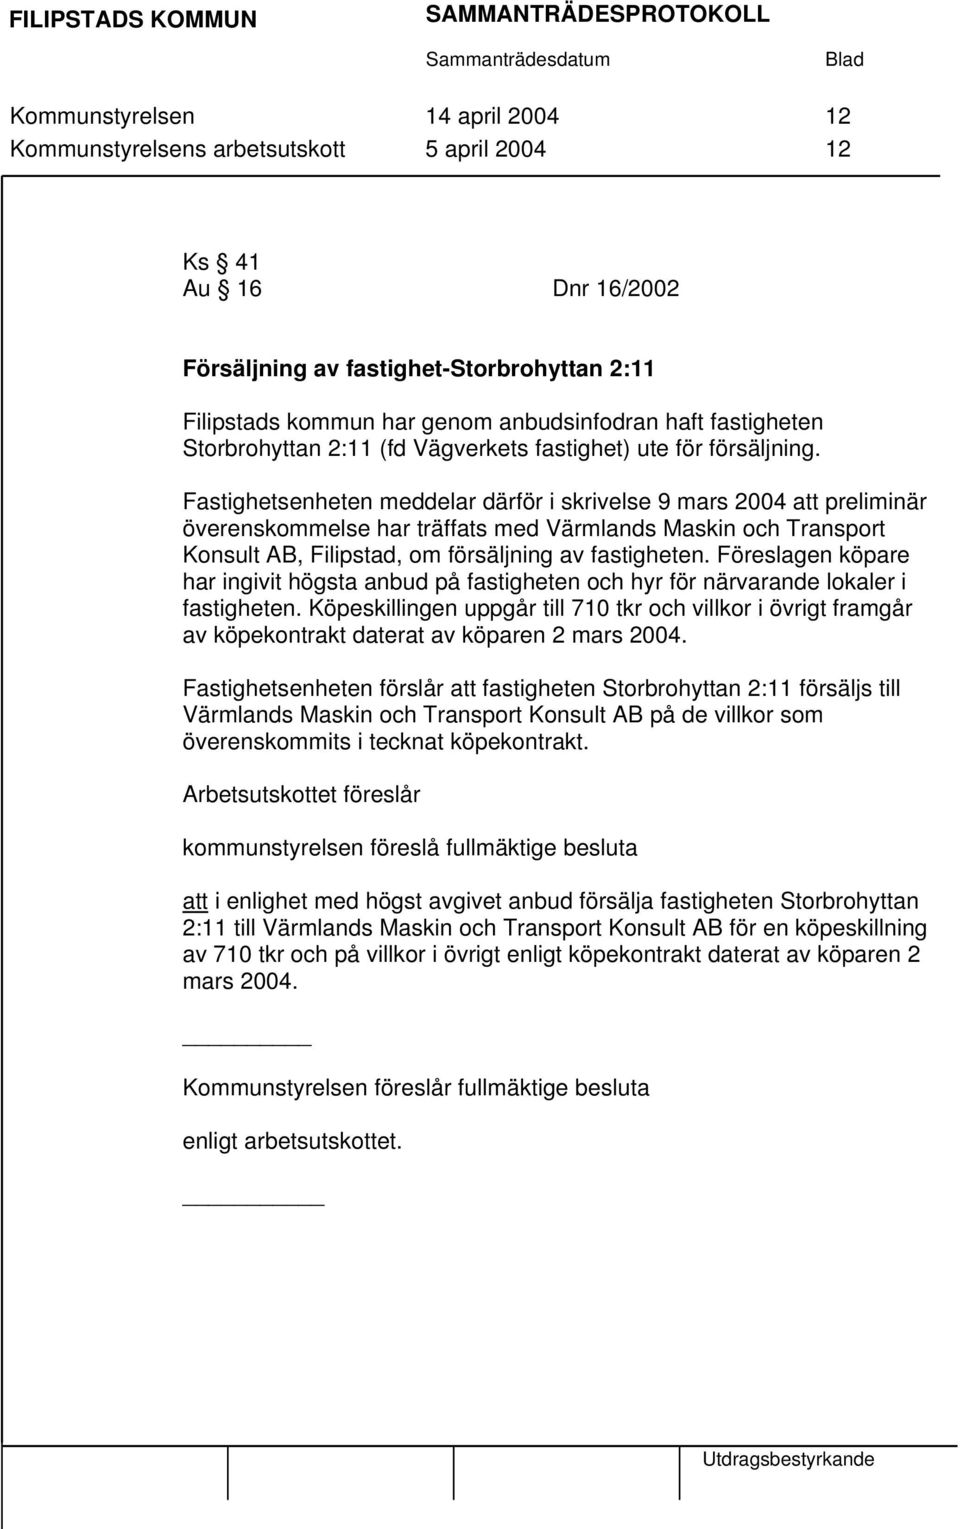 Fastighetsenheten meddelar därför i skrivelse 9 mars 2004 att preliminär överenskommelse har träffats med Värmlands Maskin och Transport Konsult AB, Filipstad, om försäljning av fastigheten.